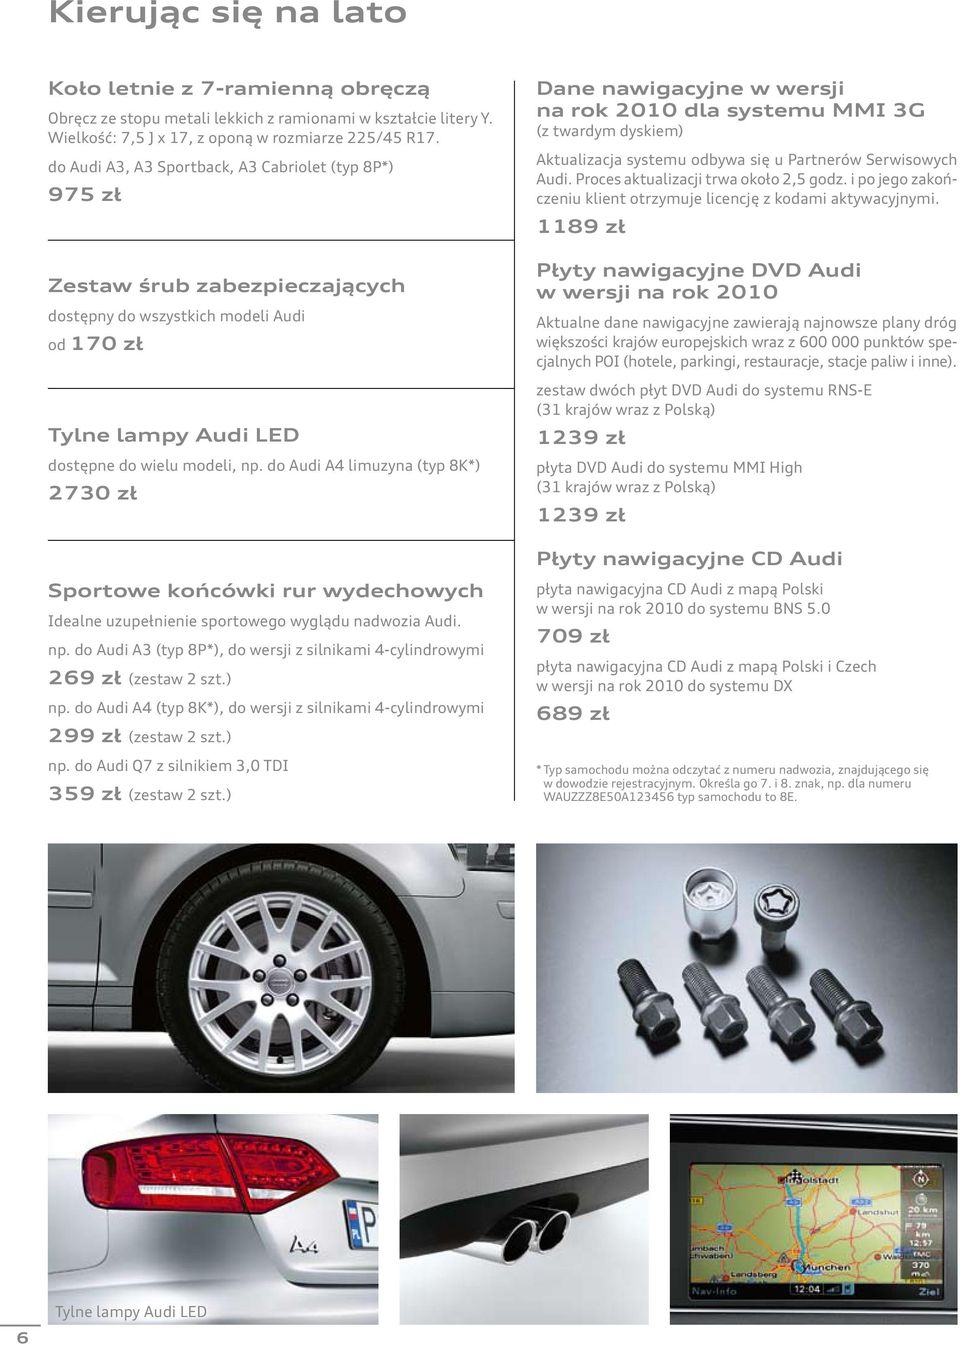 do Audi A4 limuzyna (typ 8K*) 2730 zł Sportowe końcówki rur wydechowych Idealne uzupełnienie sportowego wyglądu nadwozia Audi. np.